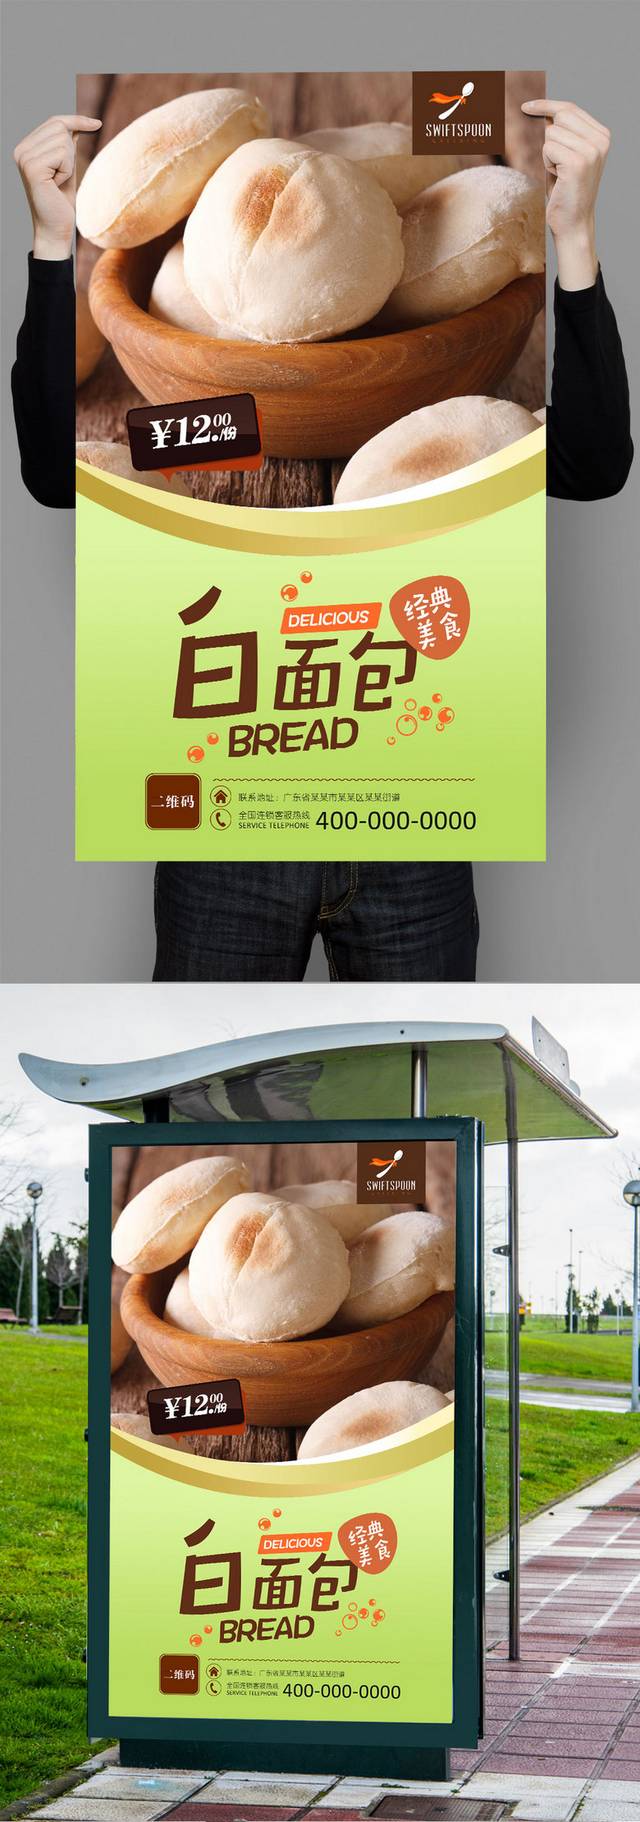 清新面包宣传海报设计